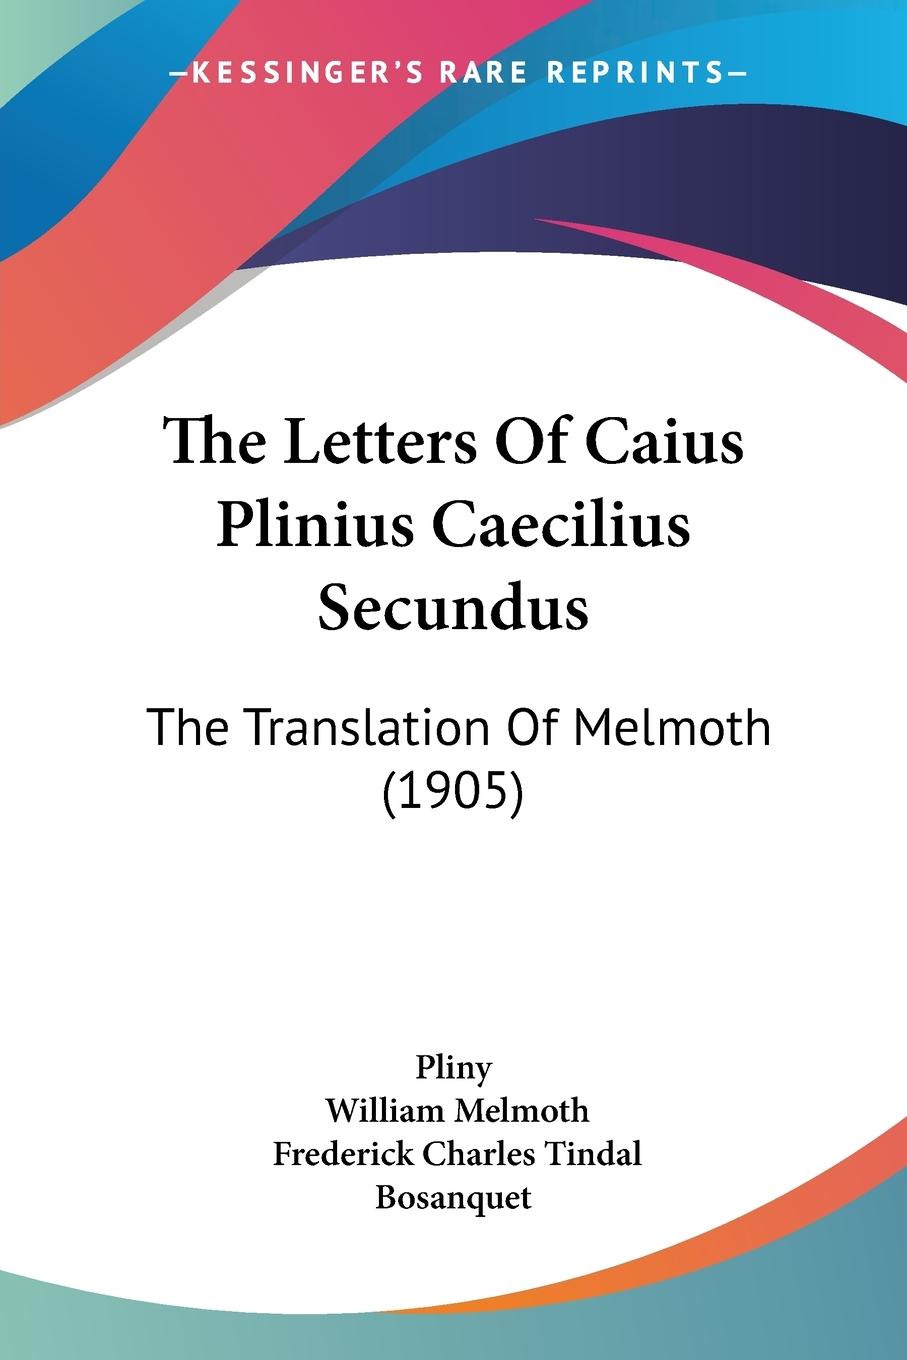 The Letters Of Caius Plinius Caecilius Secundus - Pliny